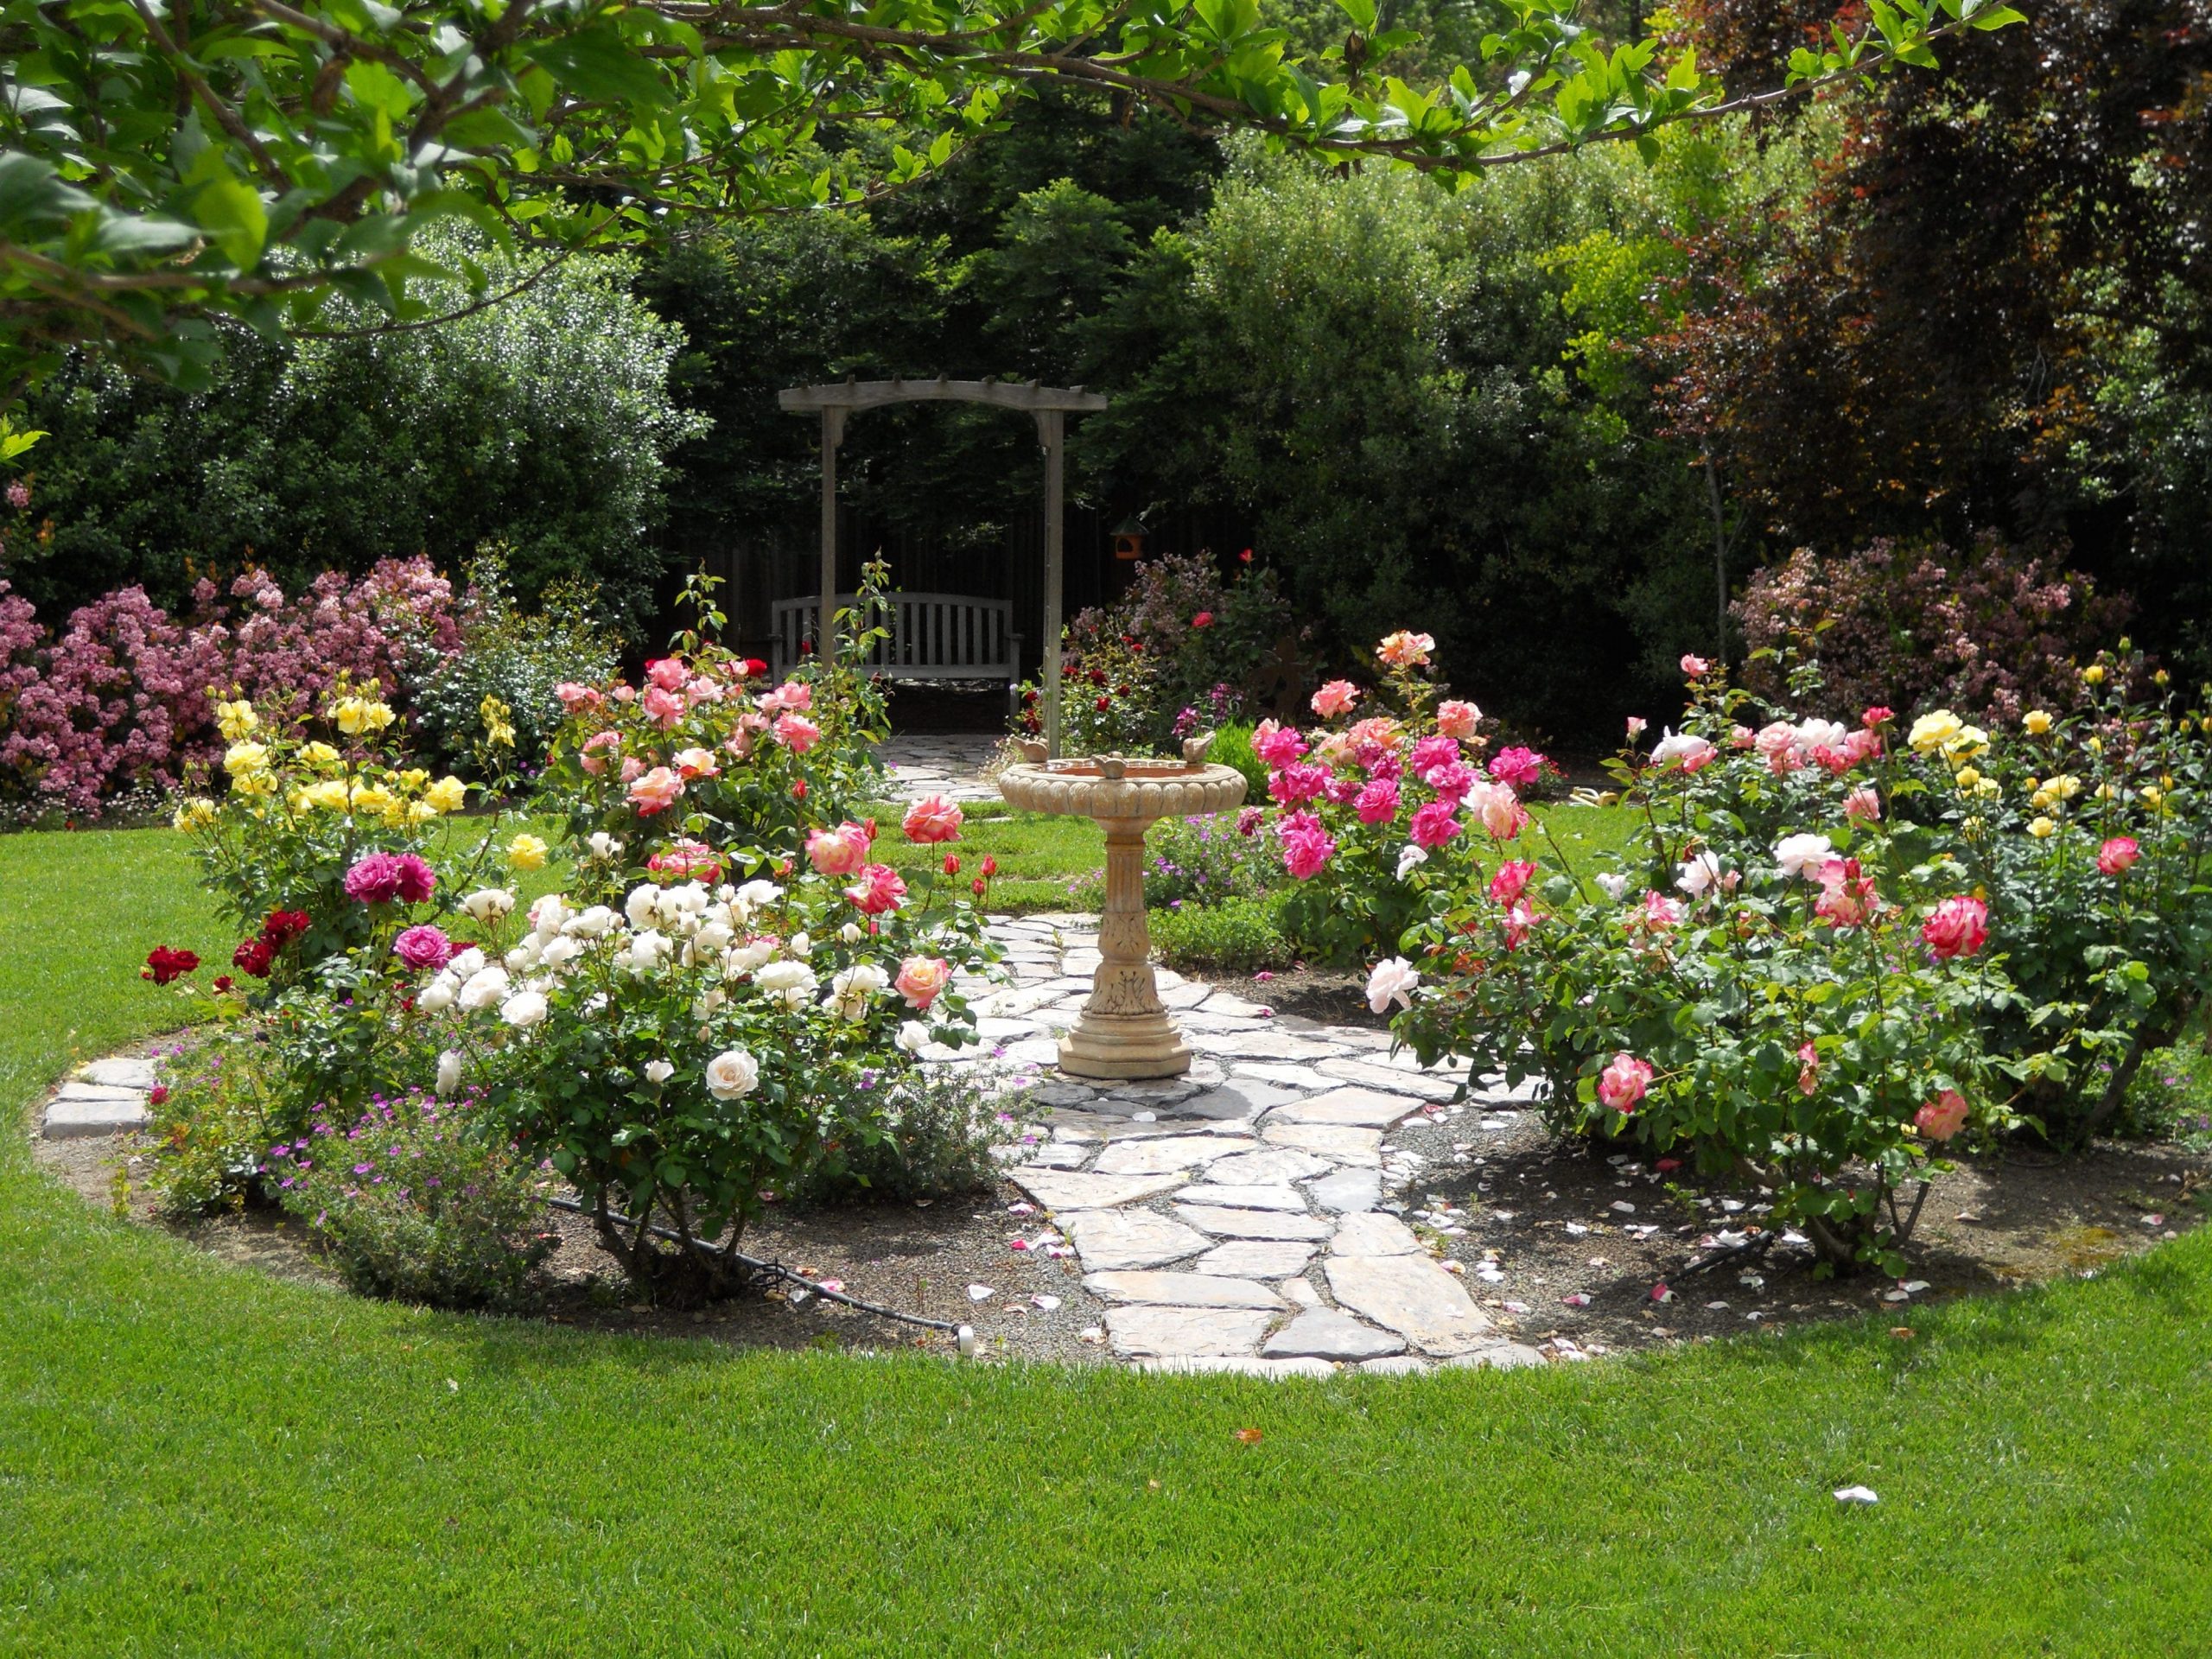 Simphome.com rose garden designs for small yard simple design ideas rose garden with rose garden design ideas